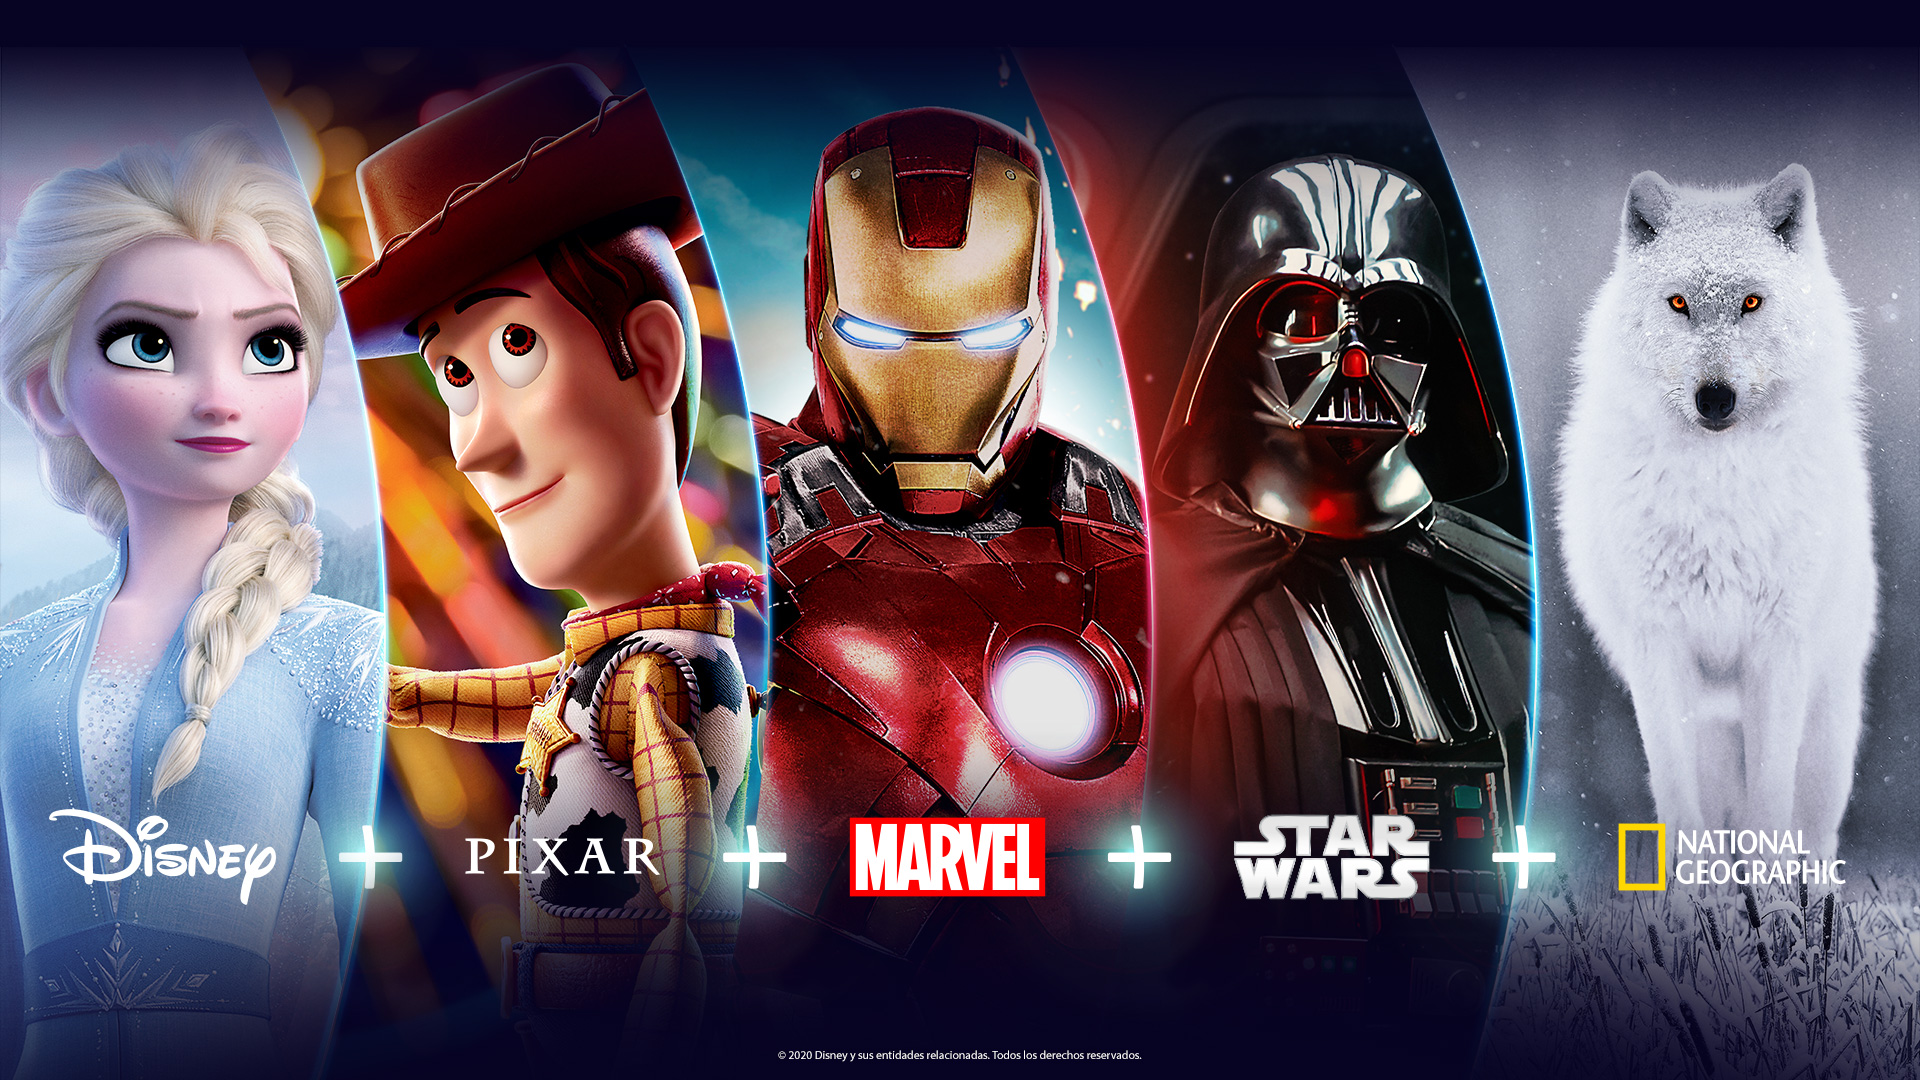 La oferta de Disney Plus incluye a Pixar, Marvel, Star Wars y contenidos de National Geographic / Cortesía: Disney.